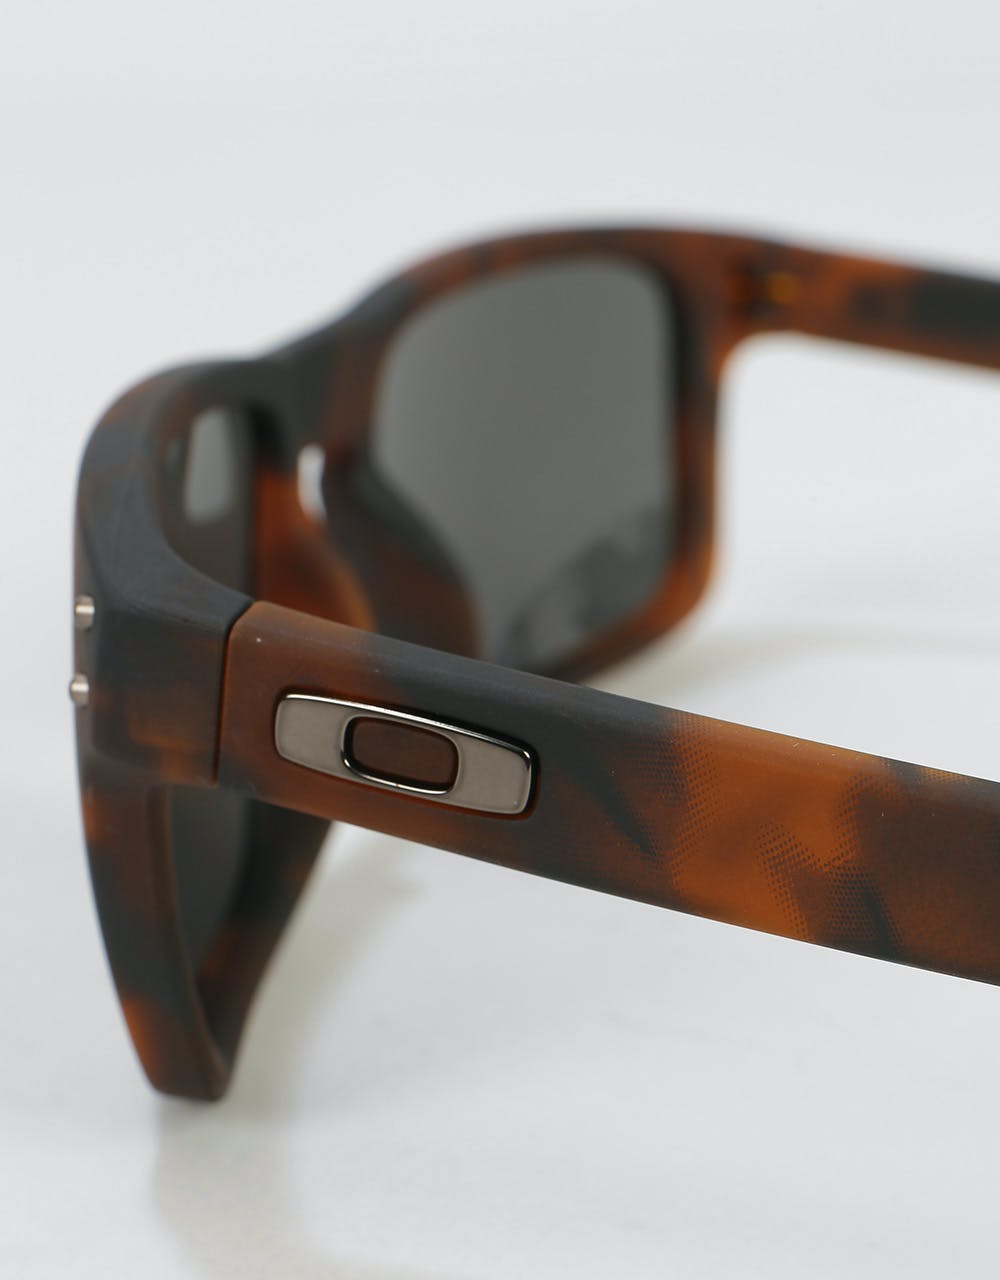 Oakley Holbrook Sunglasses - Matte Brown Tortoise (Prizm Black Lens)